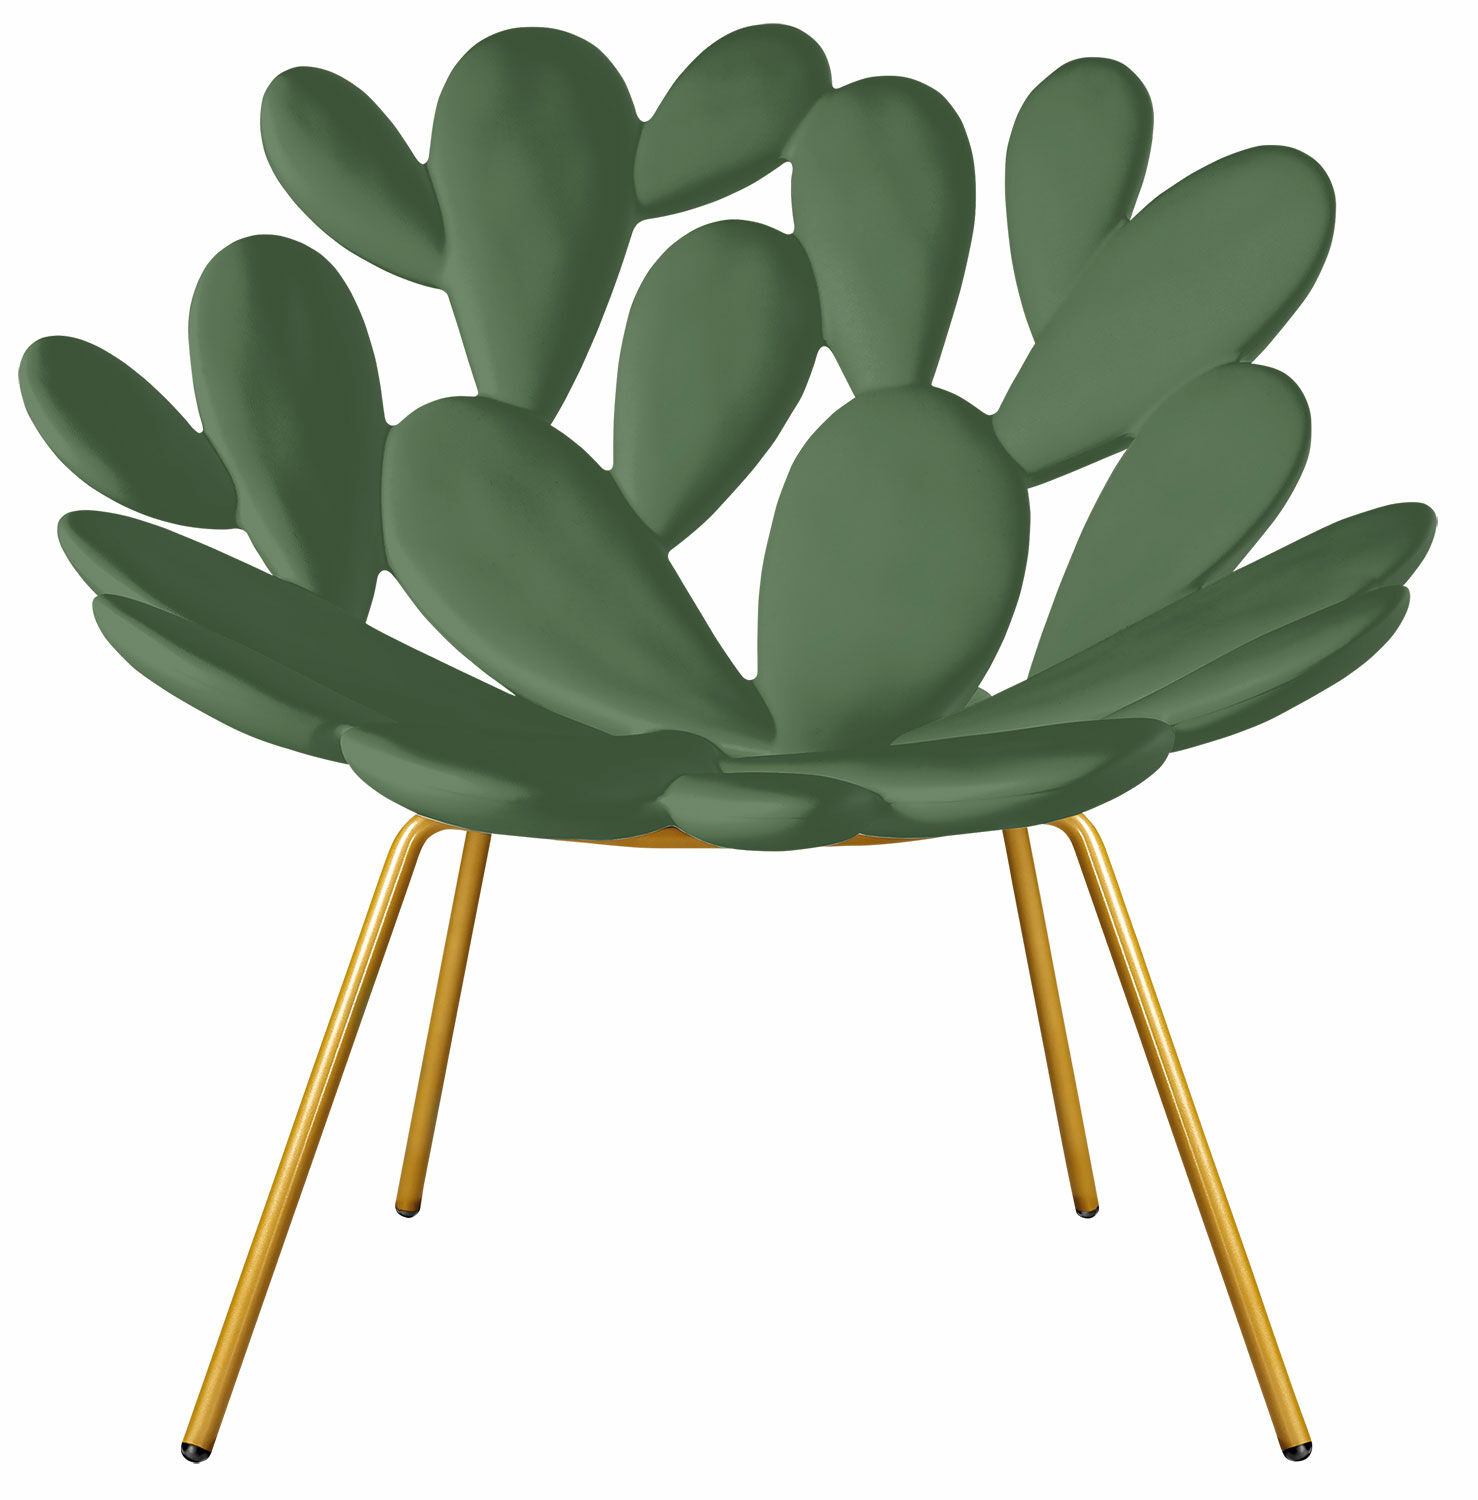 Designer chair "Filicudi green" (indoor and outdoor) - Design Marcantonio by Qeeboo